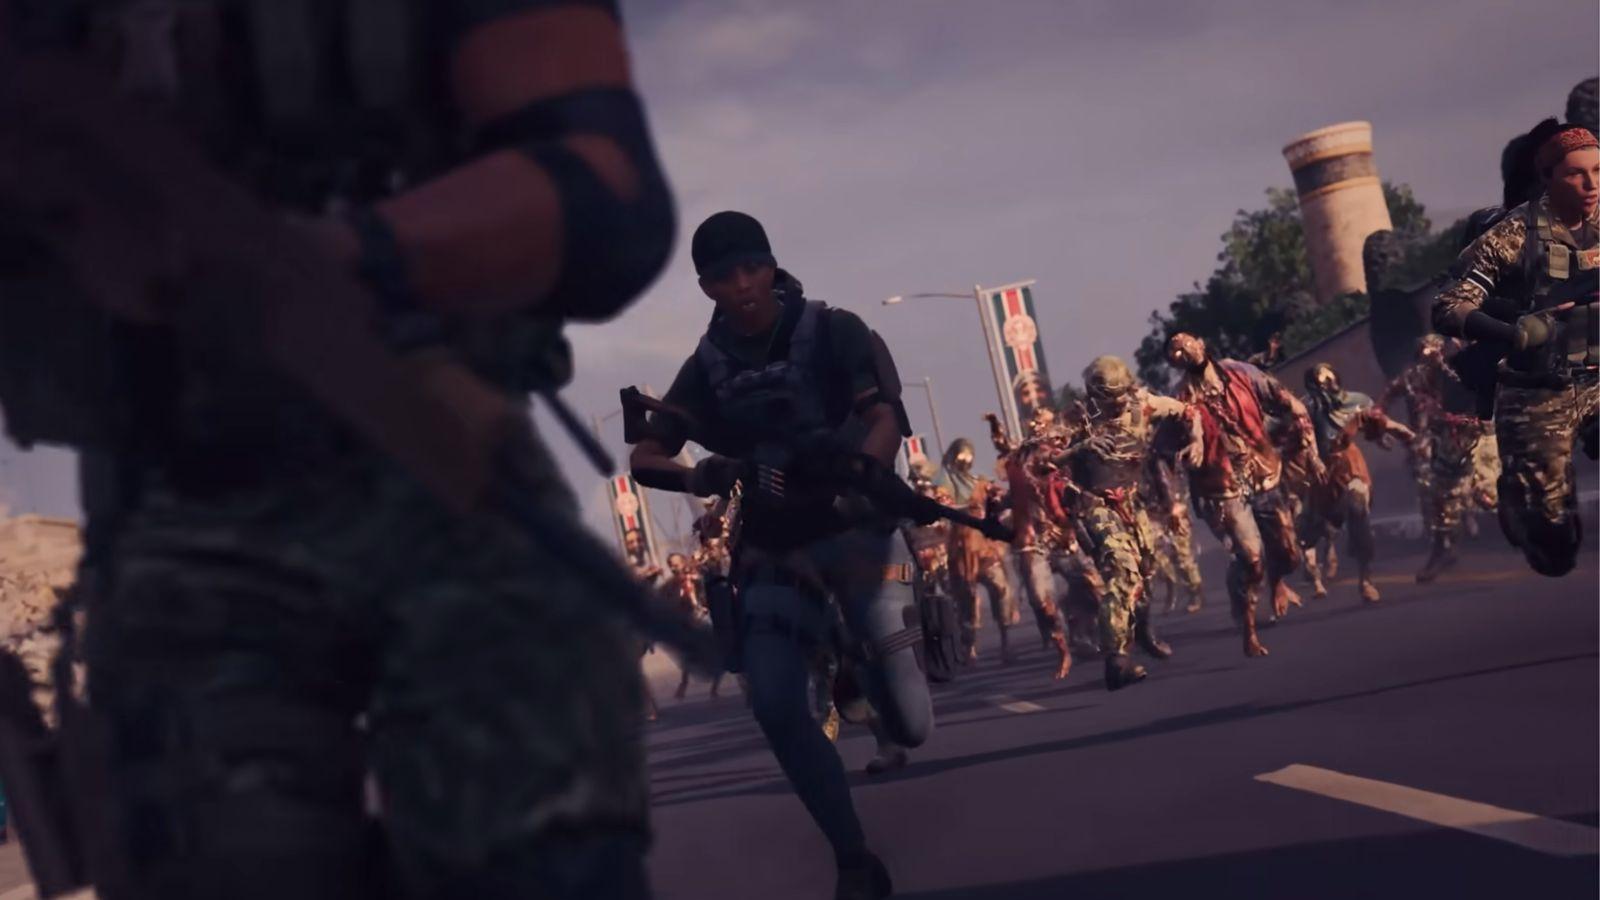 Call of Duty fan spots familiar Zombies scenes in The Day Before trailer -  Dexerto